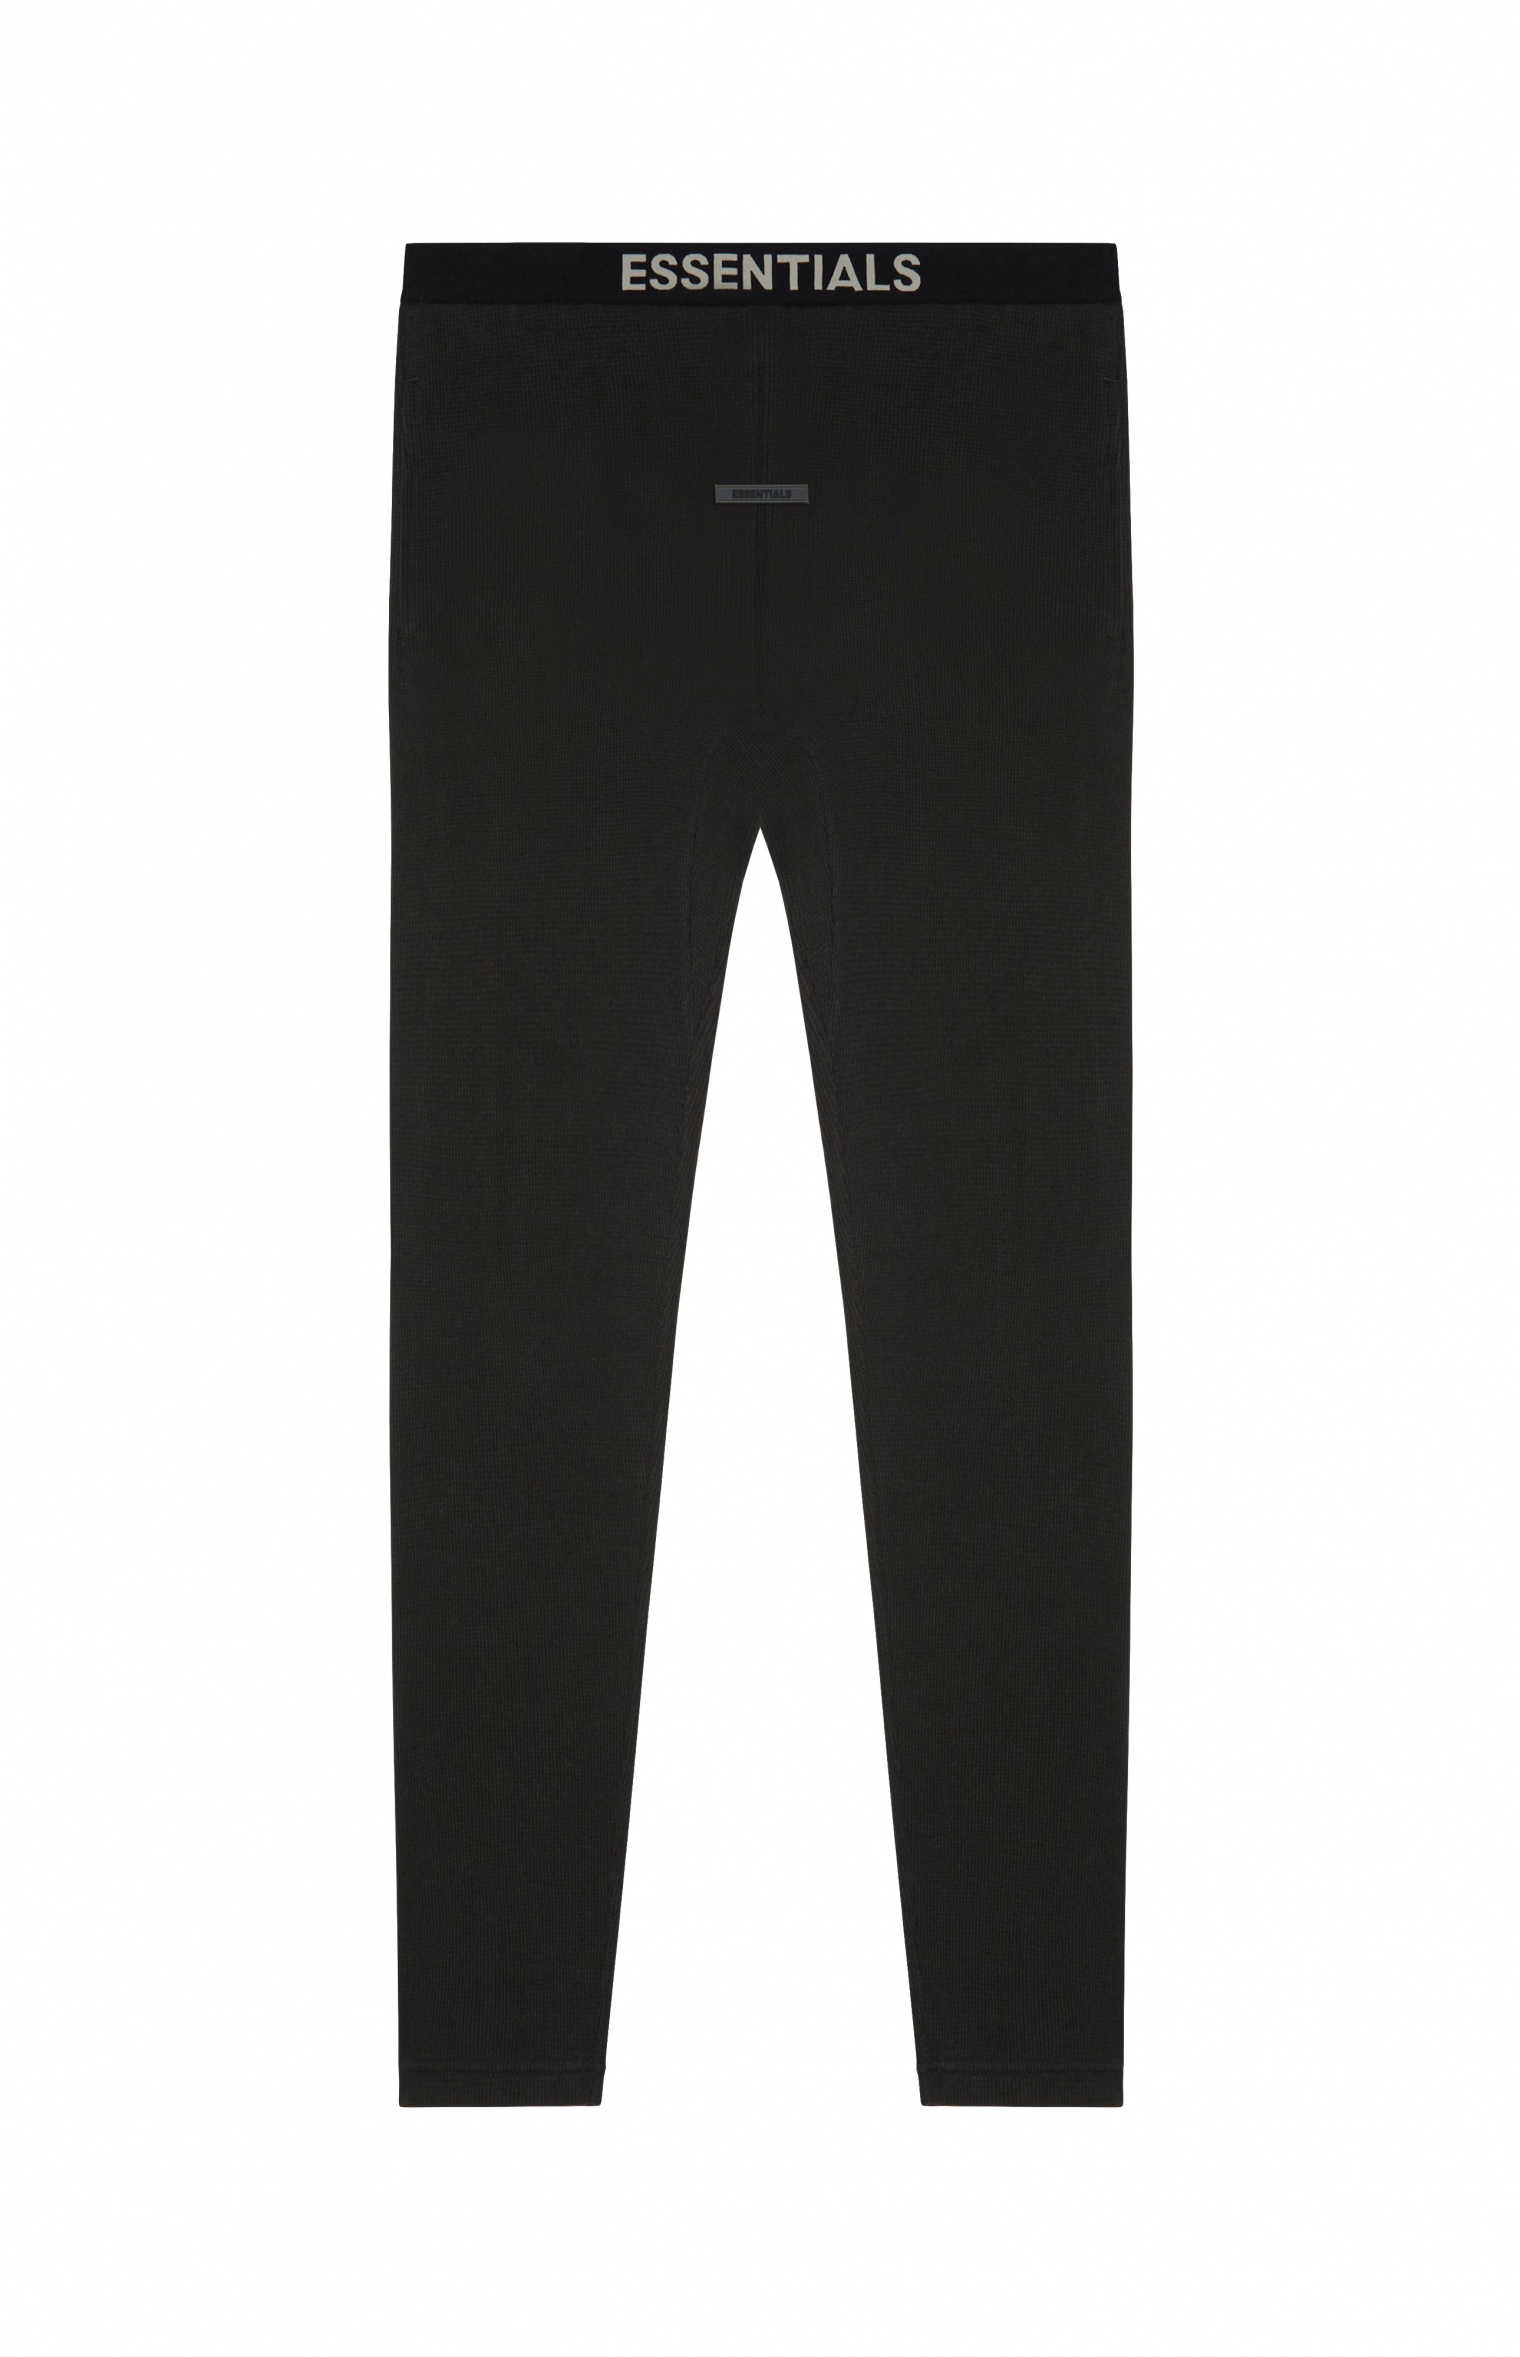 Мужские черные термо брюки на резинке Fear of God Essentials — купить за 7650 руб. в интернет-магазине SV77, арт. 130SU212040F